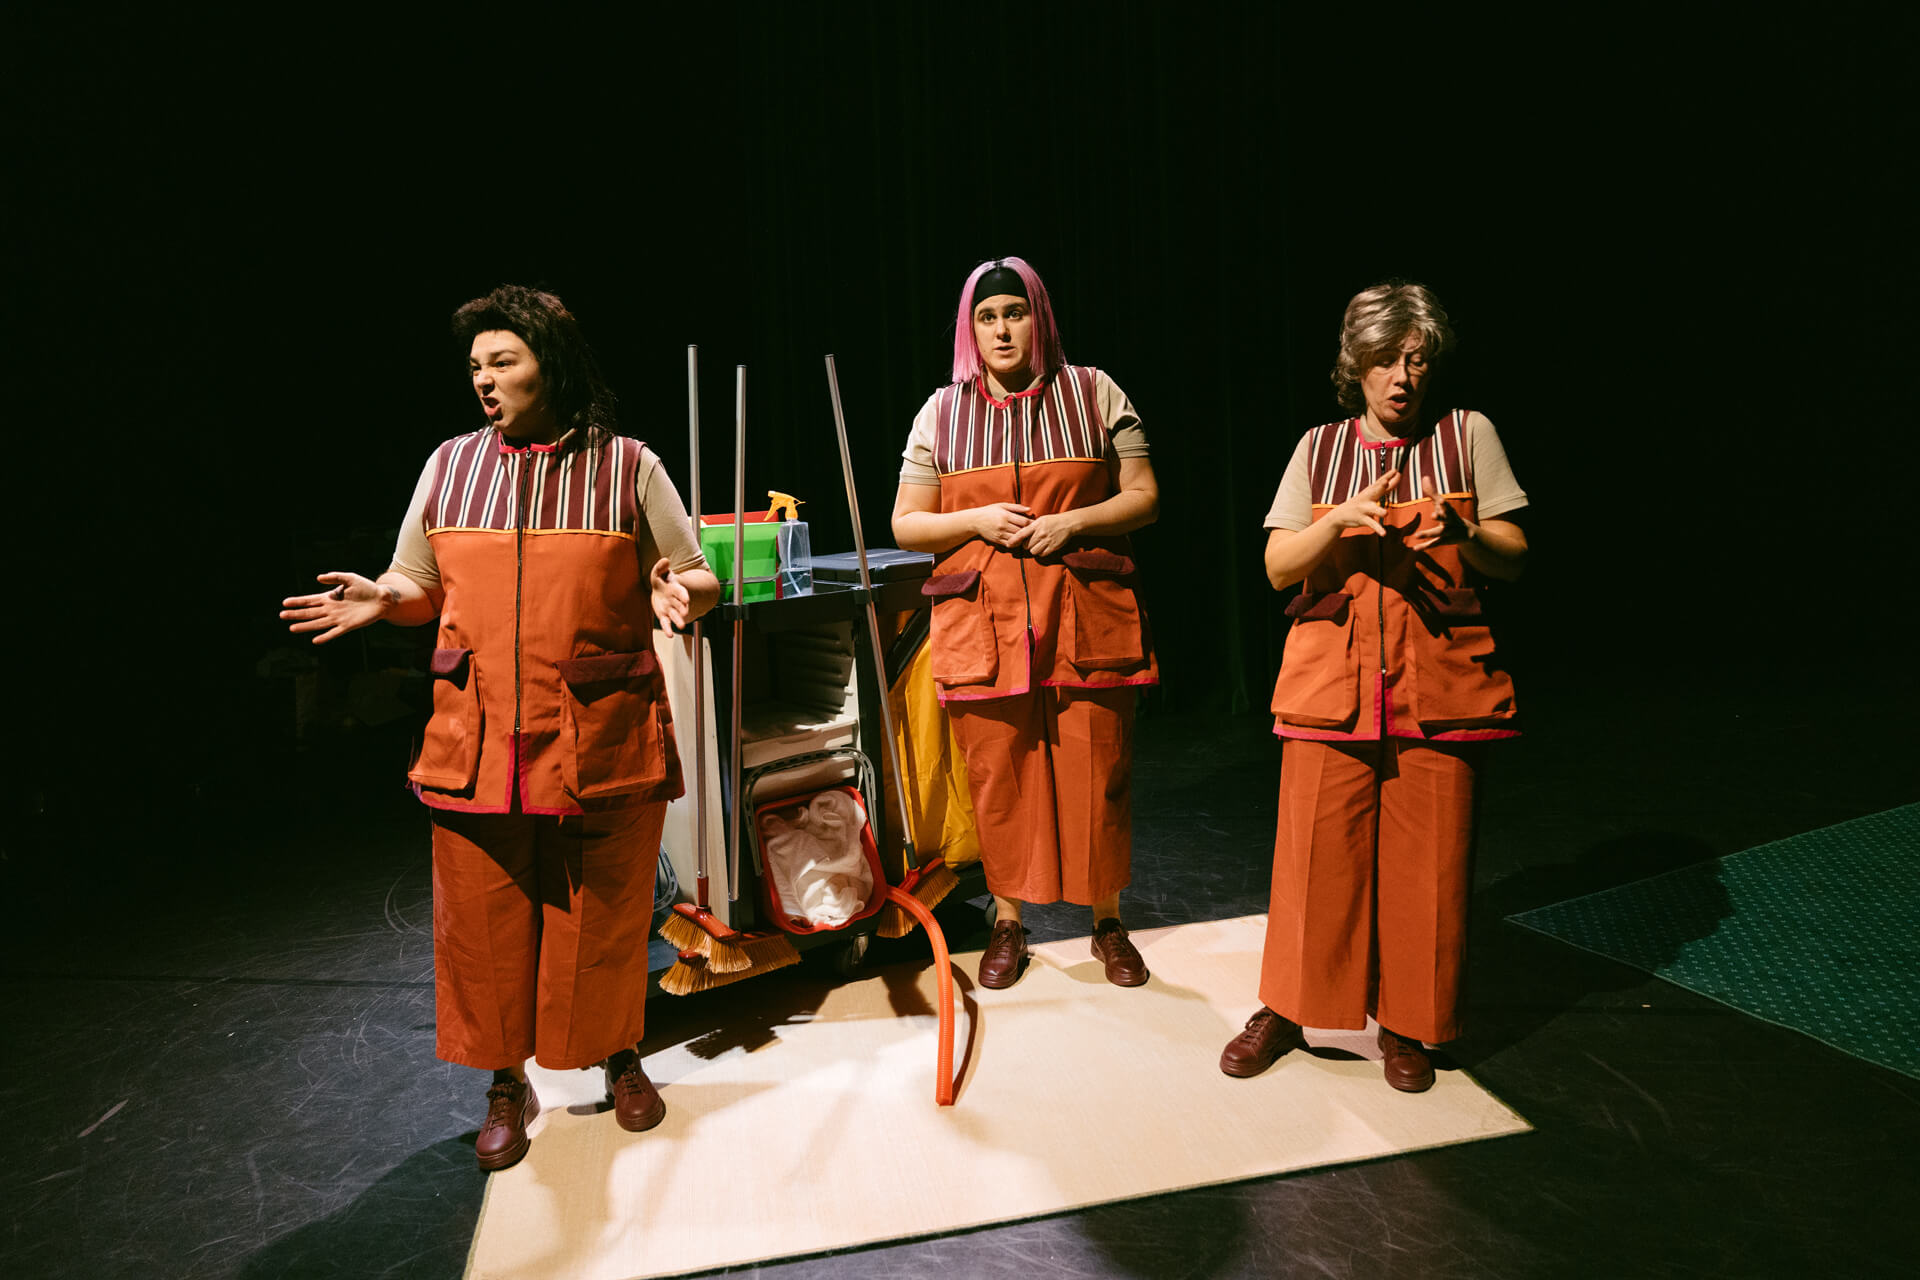 La Universidad Feminista ofrece la obra teatral “Las que limpian”, que aborda con humor la problemática de “las kellys” 1